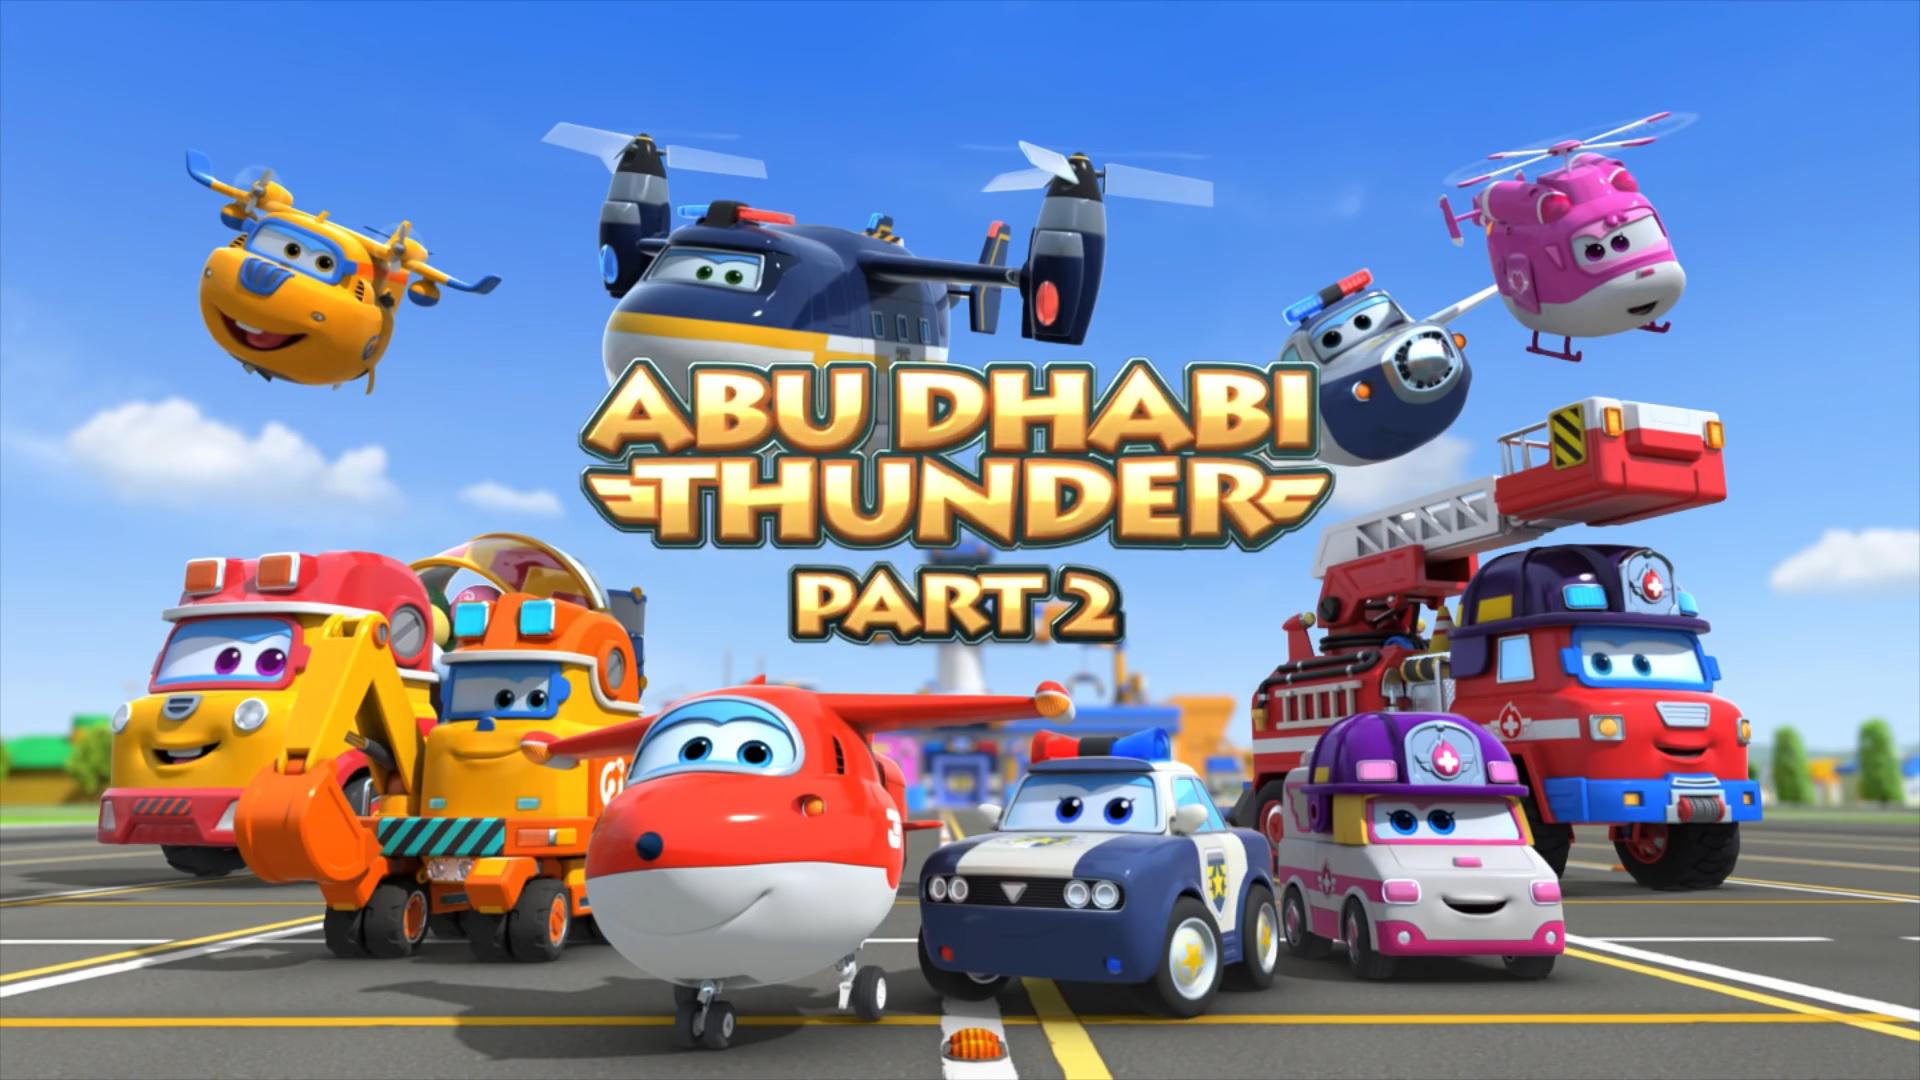 سوپر وینگز Super Wings S03E32 - Abu Dhabi Thunder 2